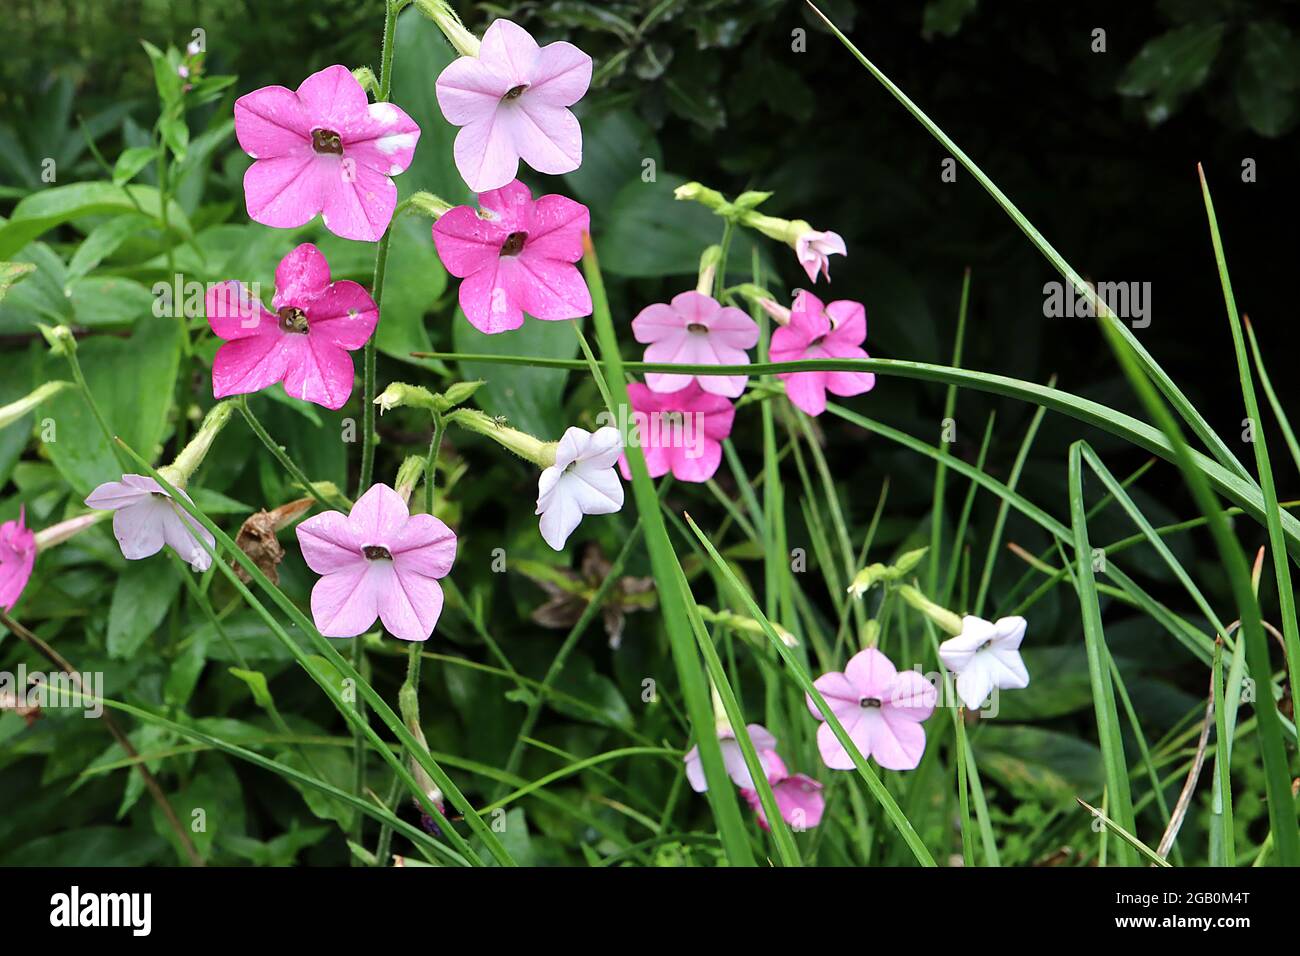 Nicotiana alata ‘Whisper Mixed’ Tabakpflanze Whisper Mixed - duftende weiße, blasse und mittelrosa Blüten, Juni, England, Großbritannien Stockfoto